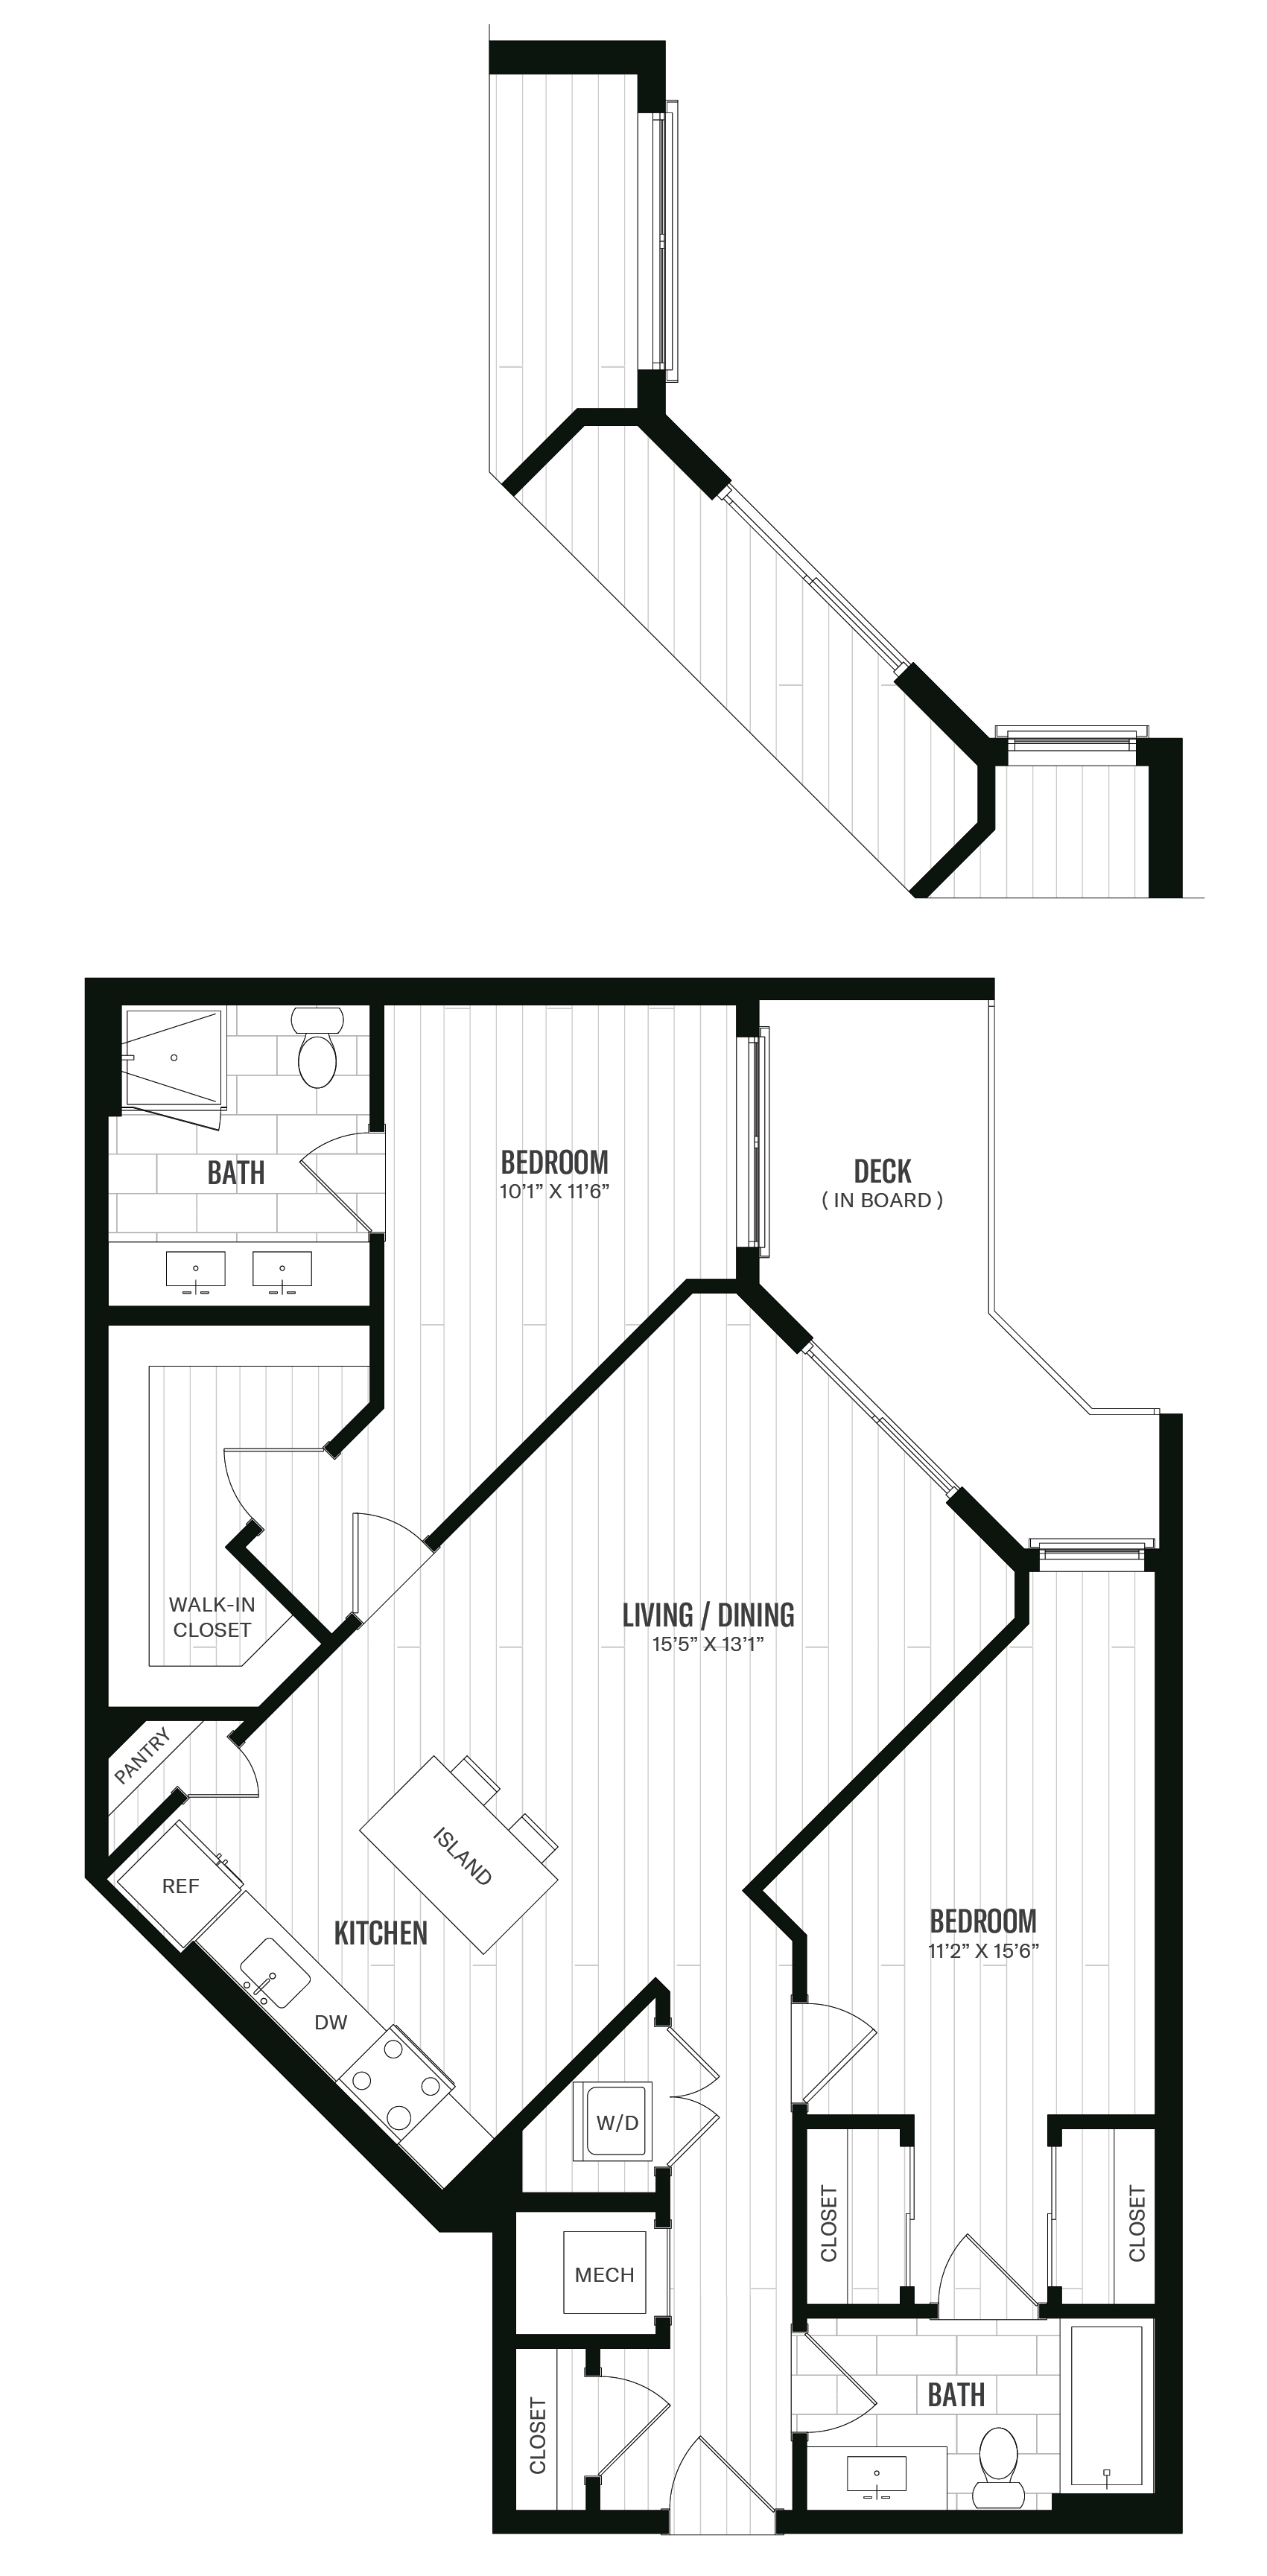 Floorplan image of unit 525